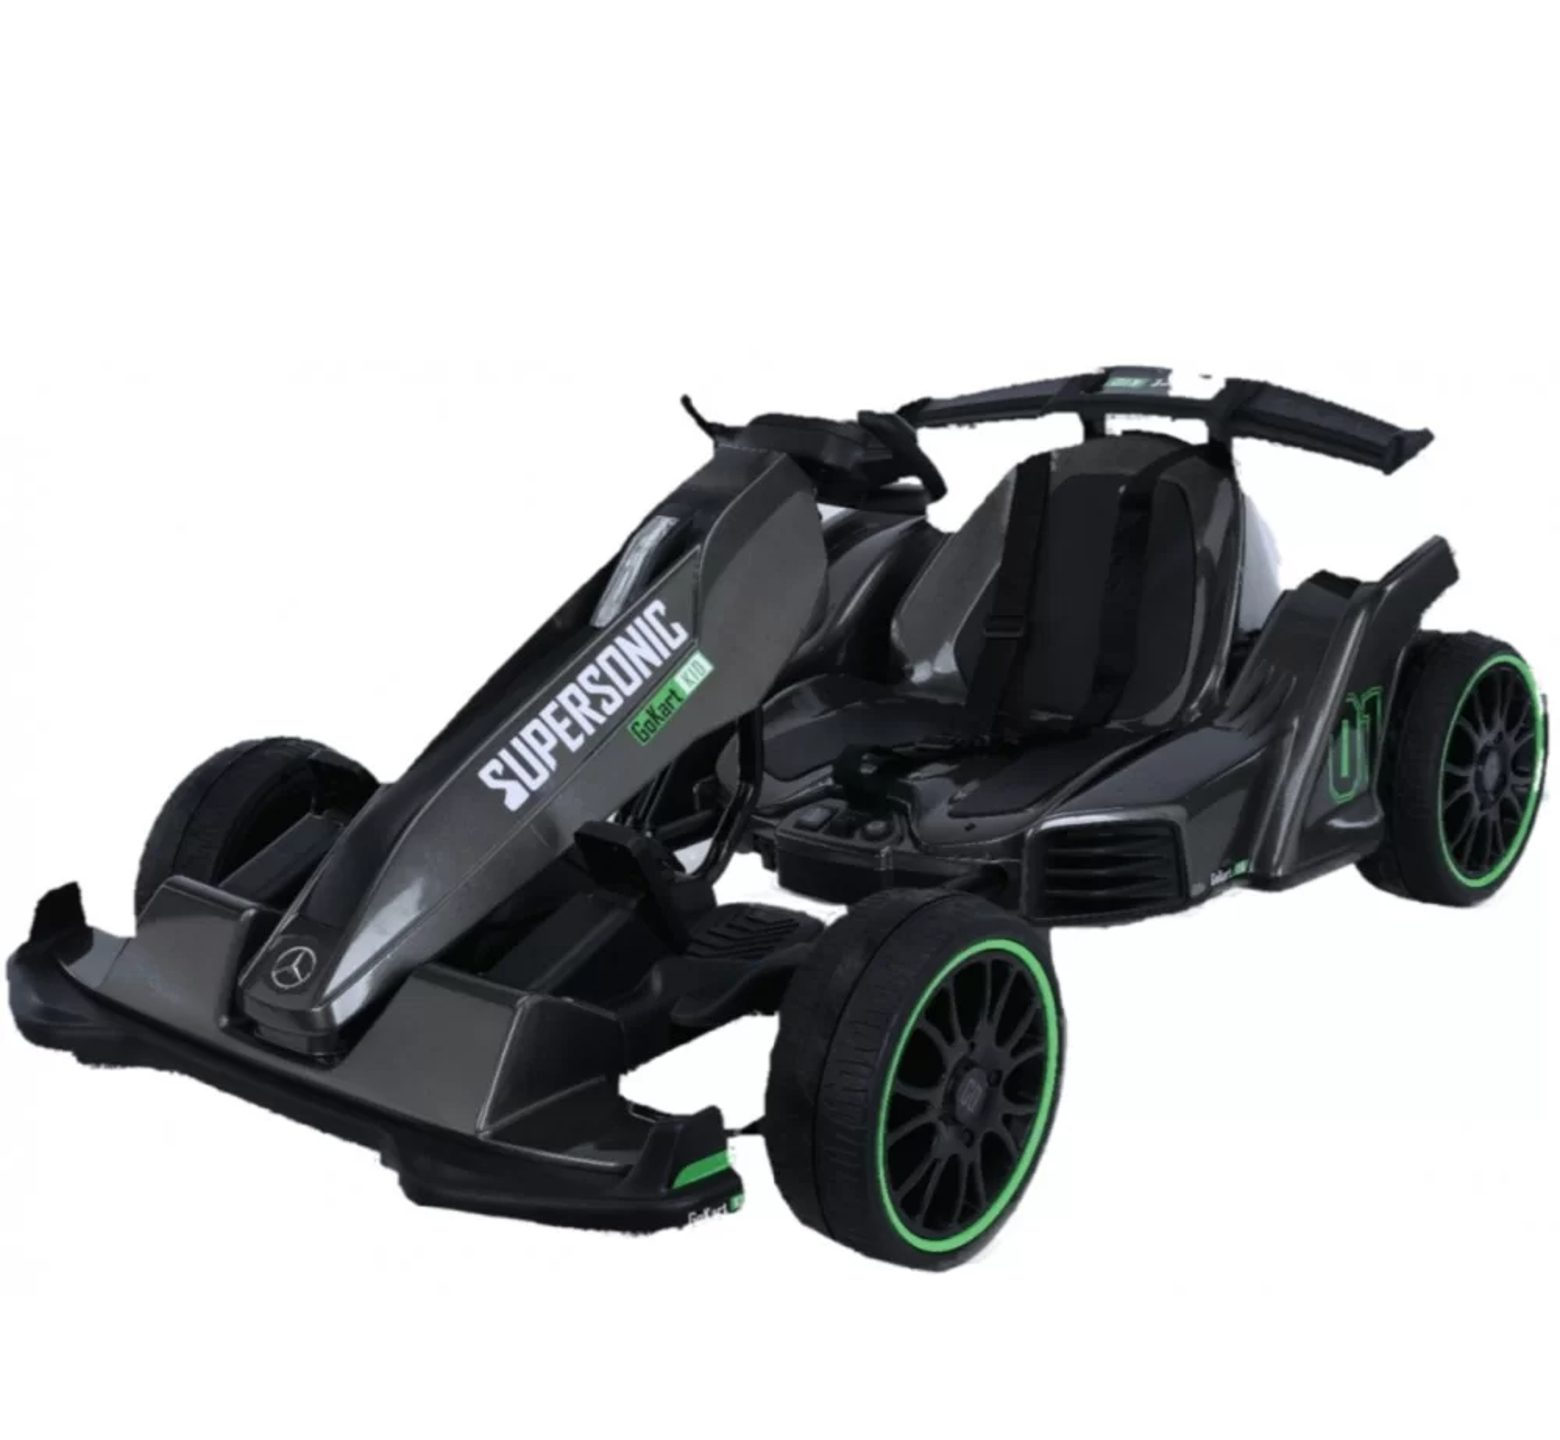 Ηλεκτροκίνητη παιδική Formula Licensed Mercedes 12v ρυθμιζόμενη για ηλικίες 3 έως 8 ετών και ελαστικά τύπου αυτοκινήτου